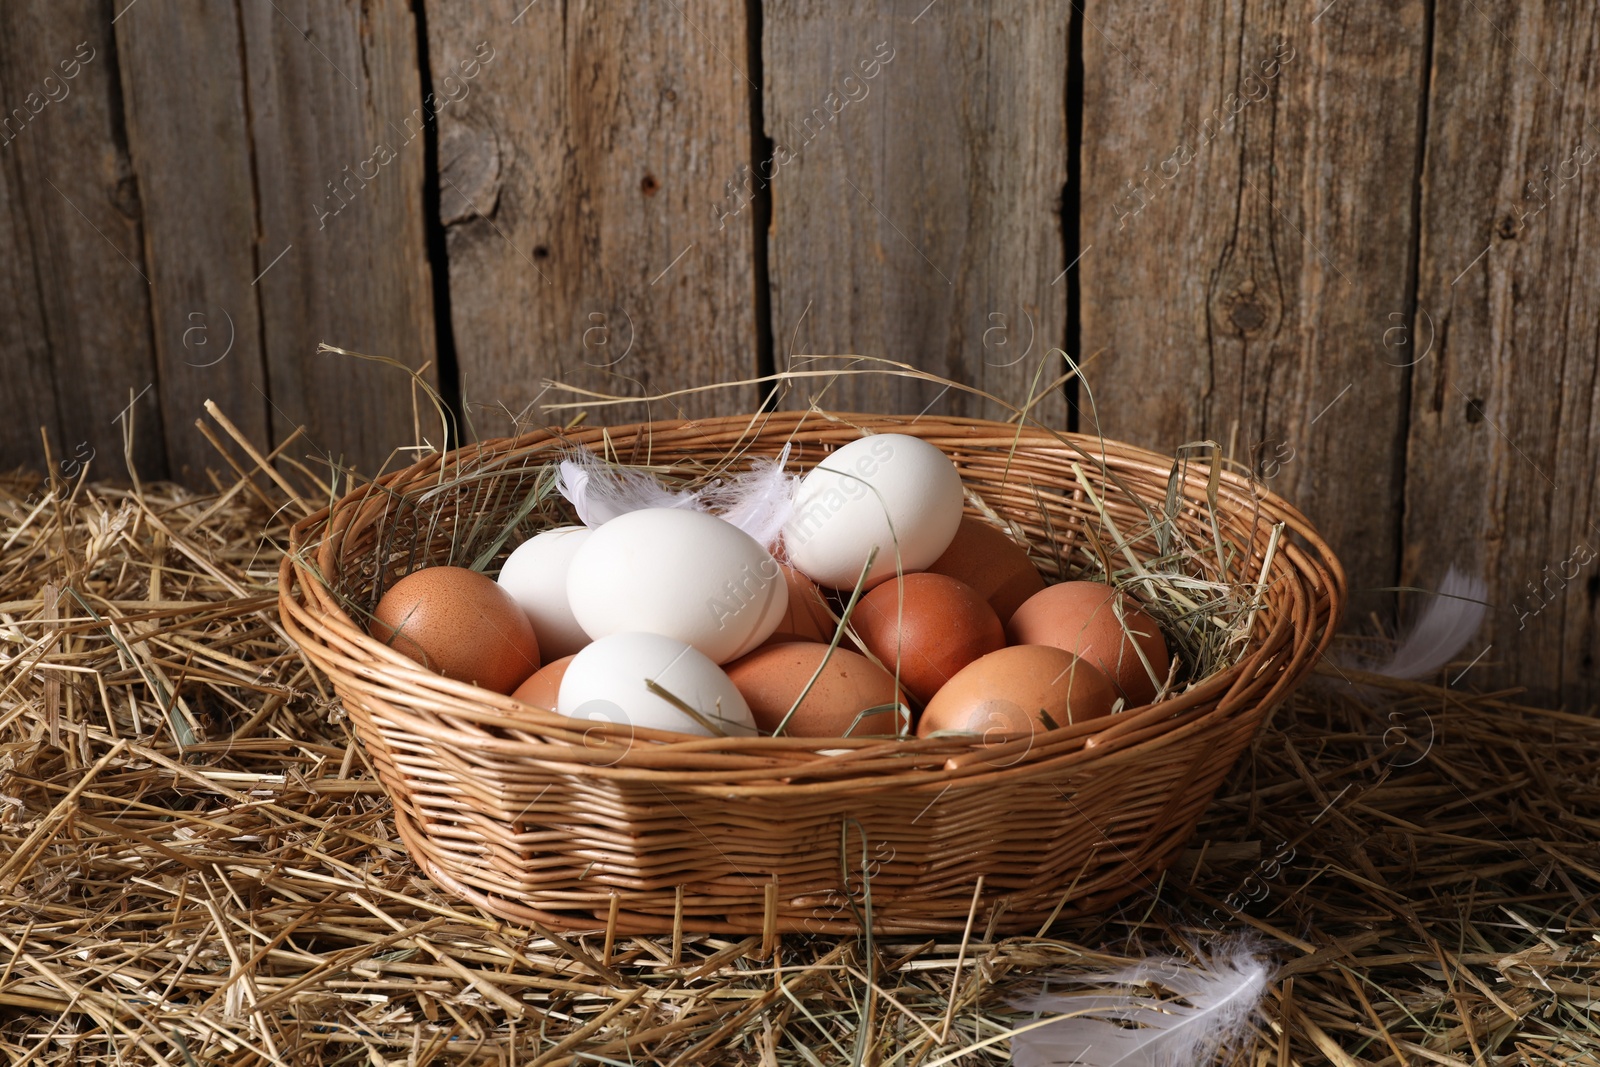 Photo of Fresh chicken eggs in wicker basket on dried straw near wooden wall